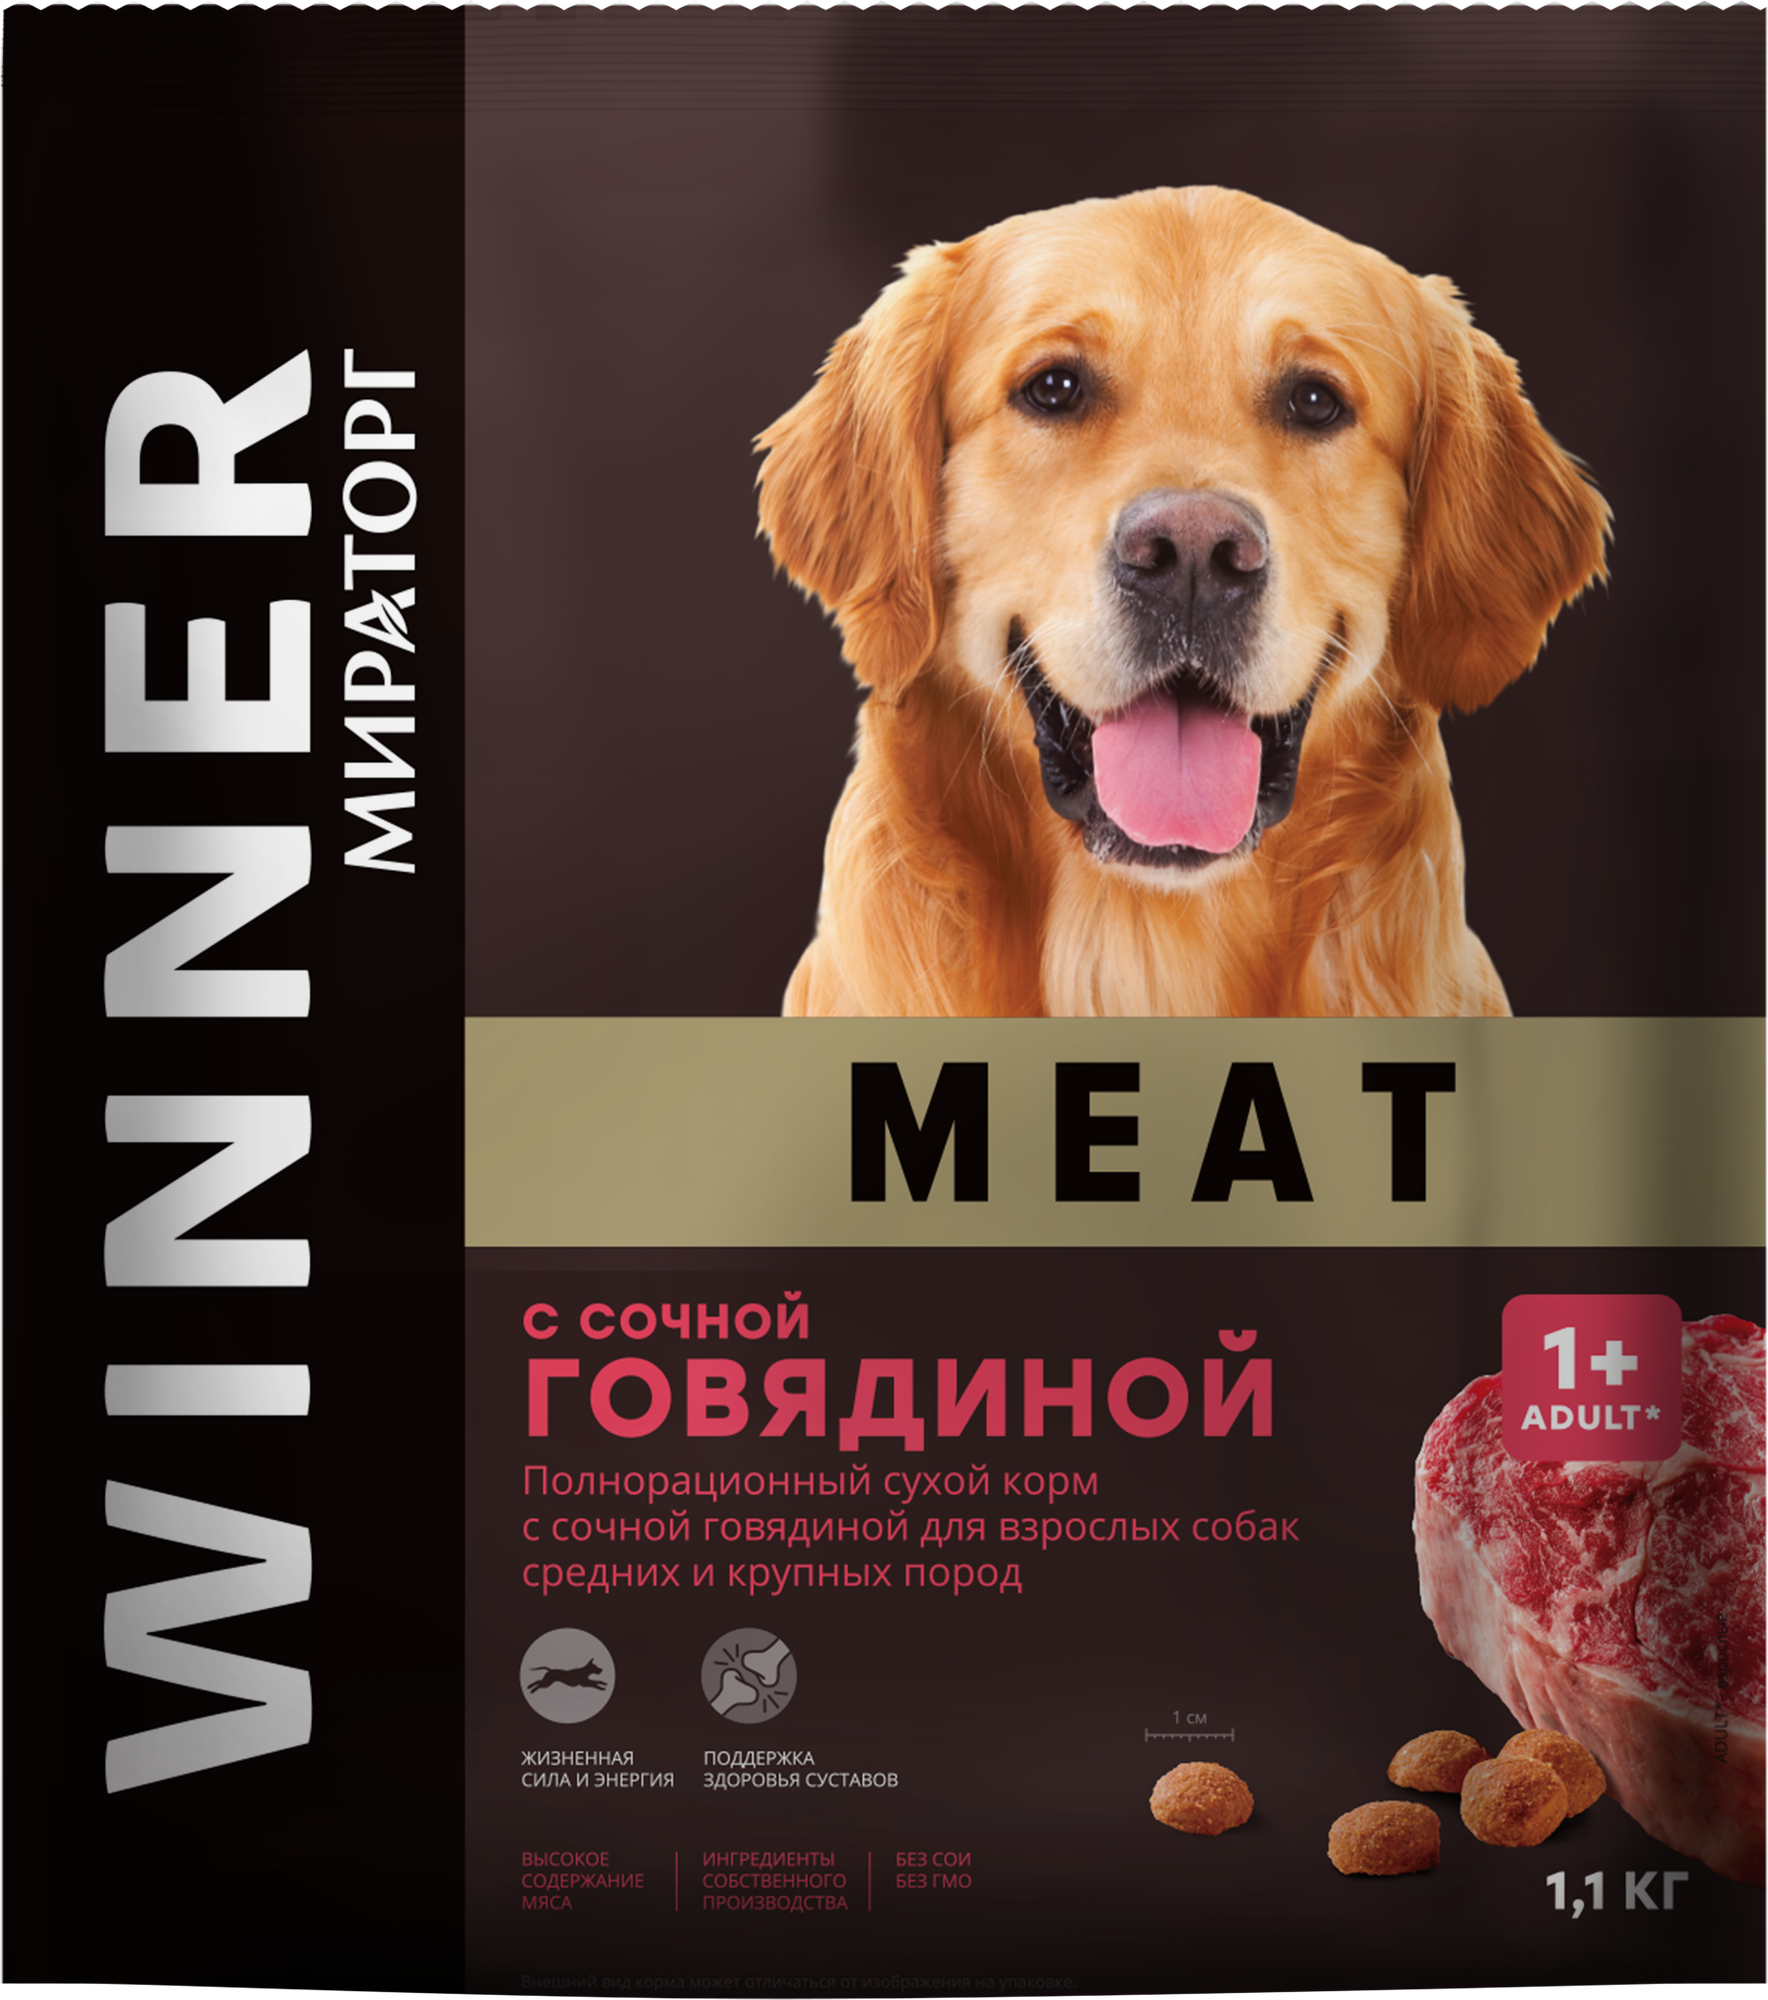 Сухой корм для собак Мираторг для здоровья костей и суставов, говядина 1 уп. х 1 шт. х 1.1 кг (для средних и крупных пород)